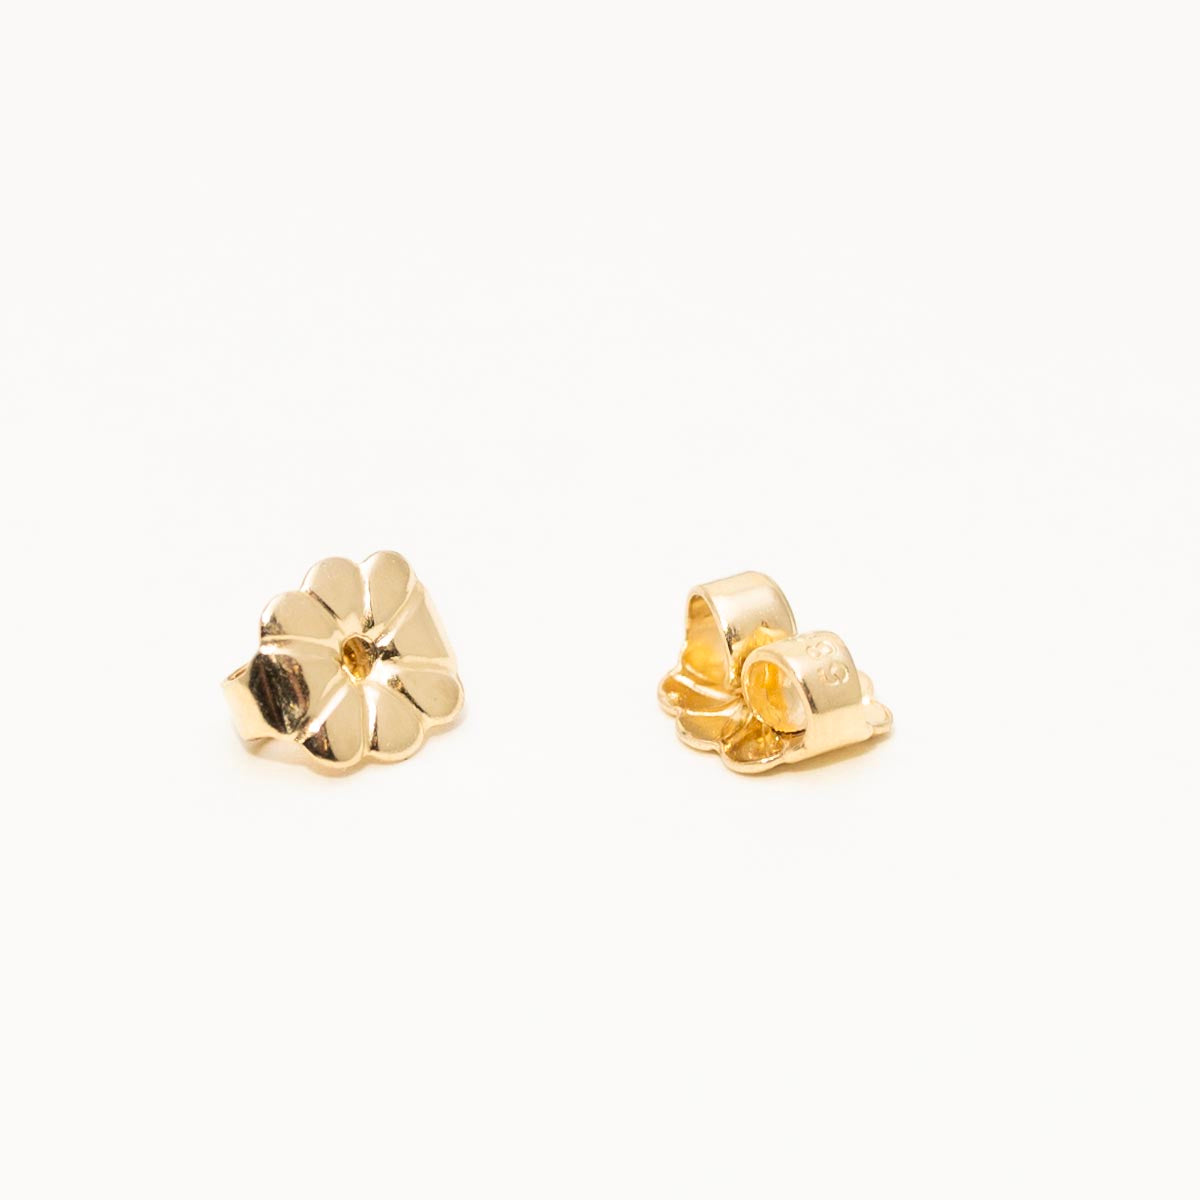 Ceylon Sapphire Stud Earrings in 14kt Yellow Gold (4.5mm)